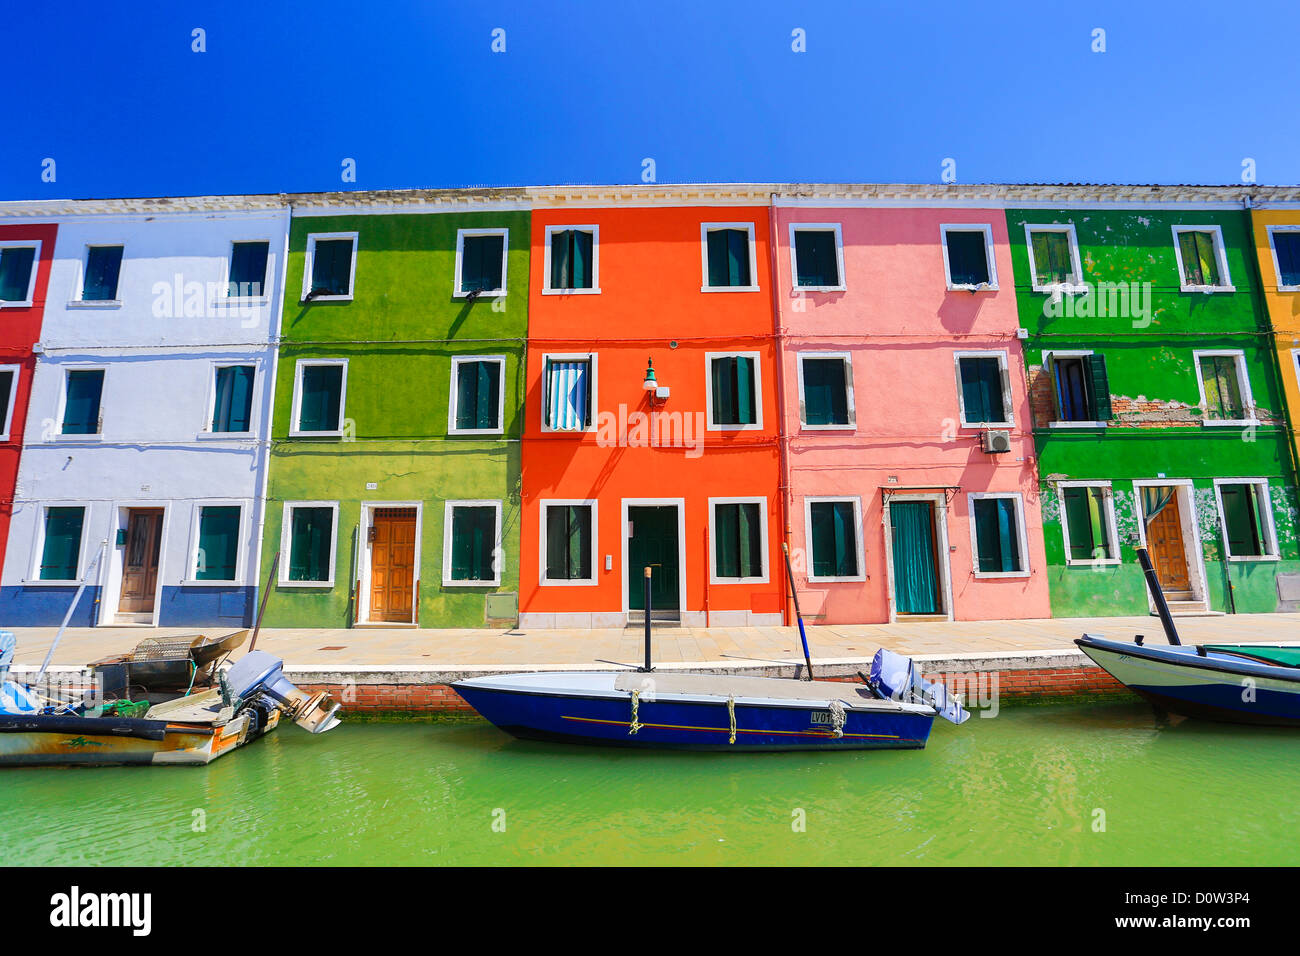 Italia, en Europa, los viajes, la arquitectura de Venecia, Burano, barcos, canal, coloridos, colores, turismo, casas Foto de stock